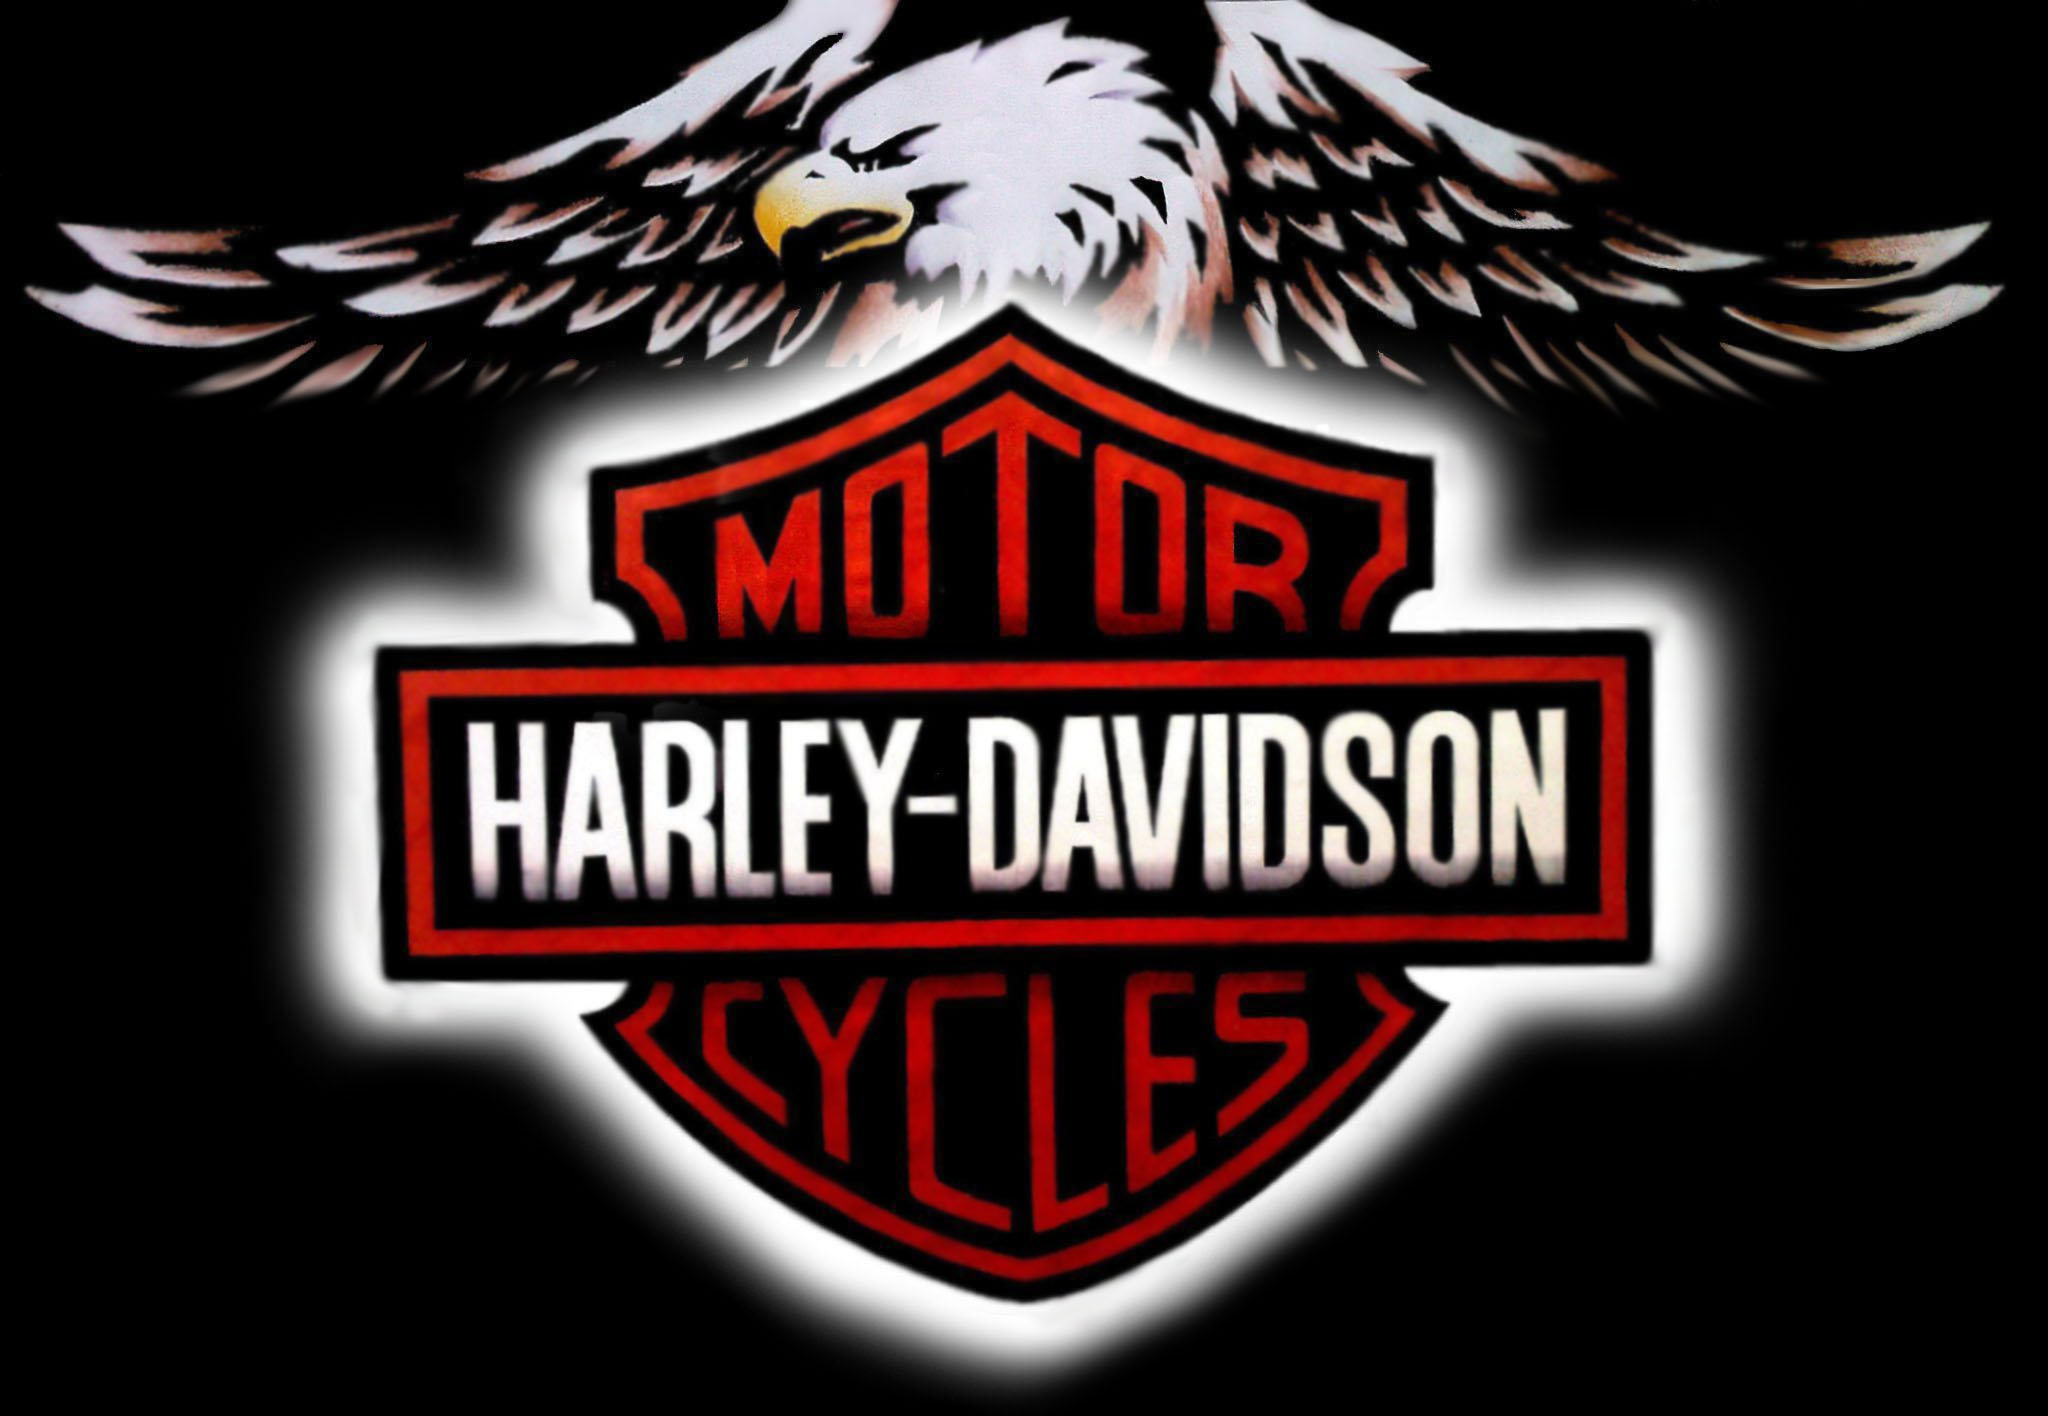 77 Free Harley Davidson Wallpapers On Wallpapersafari